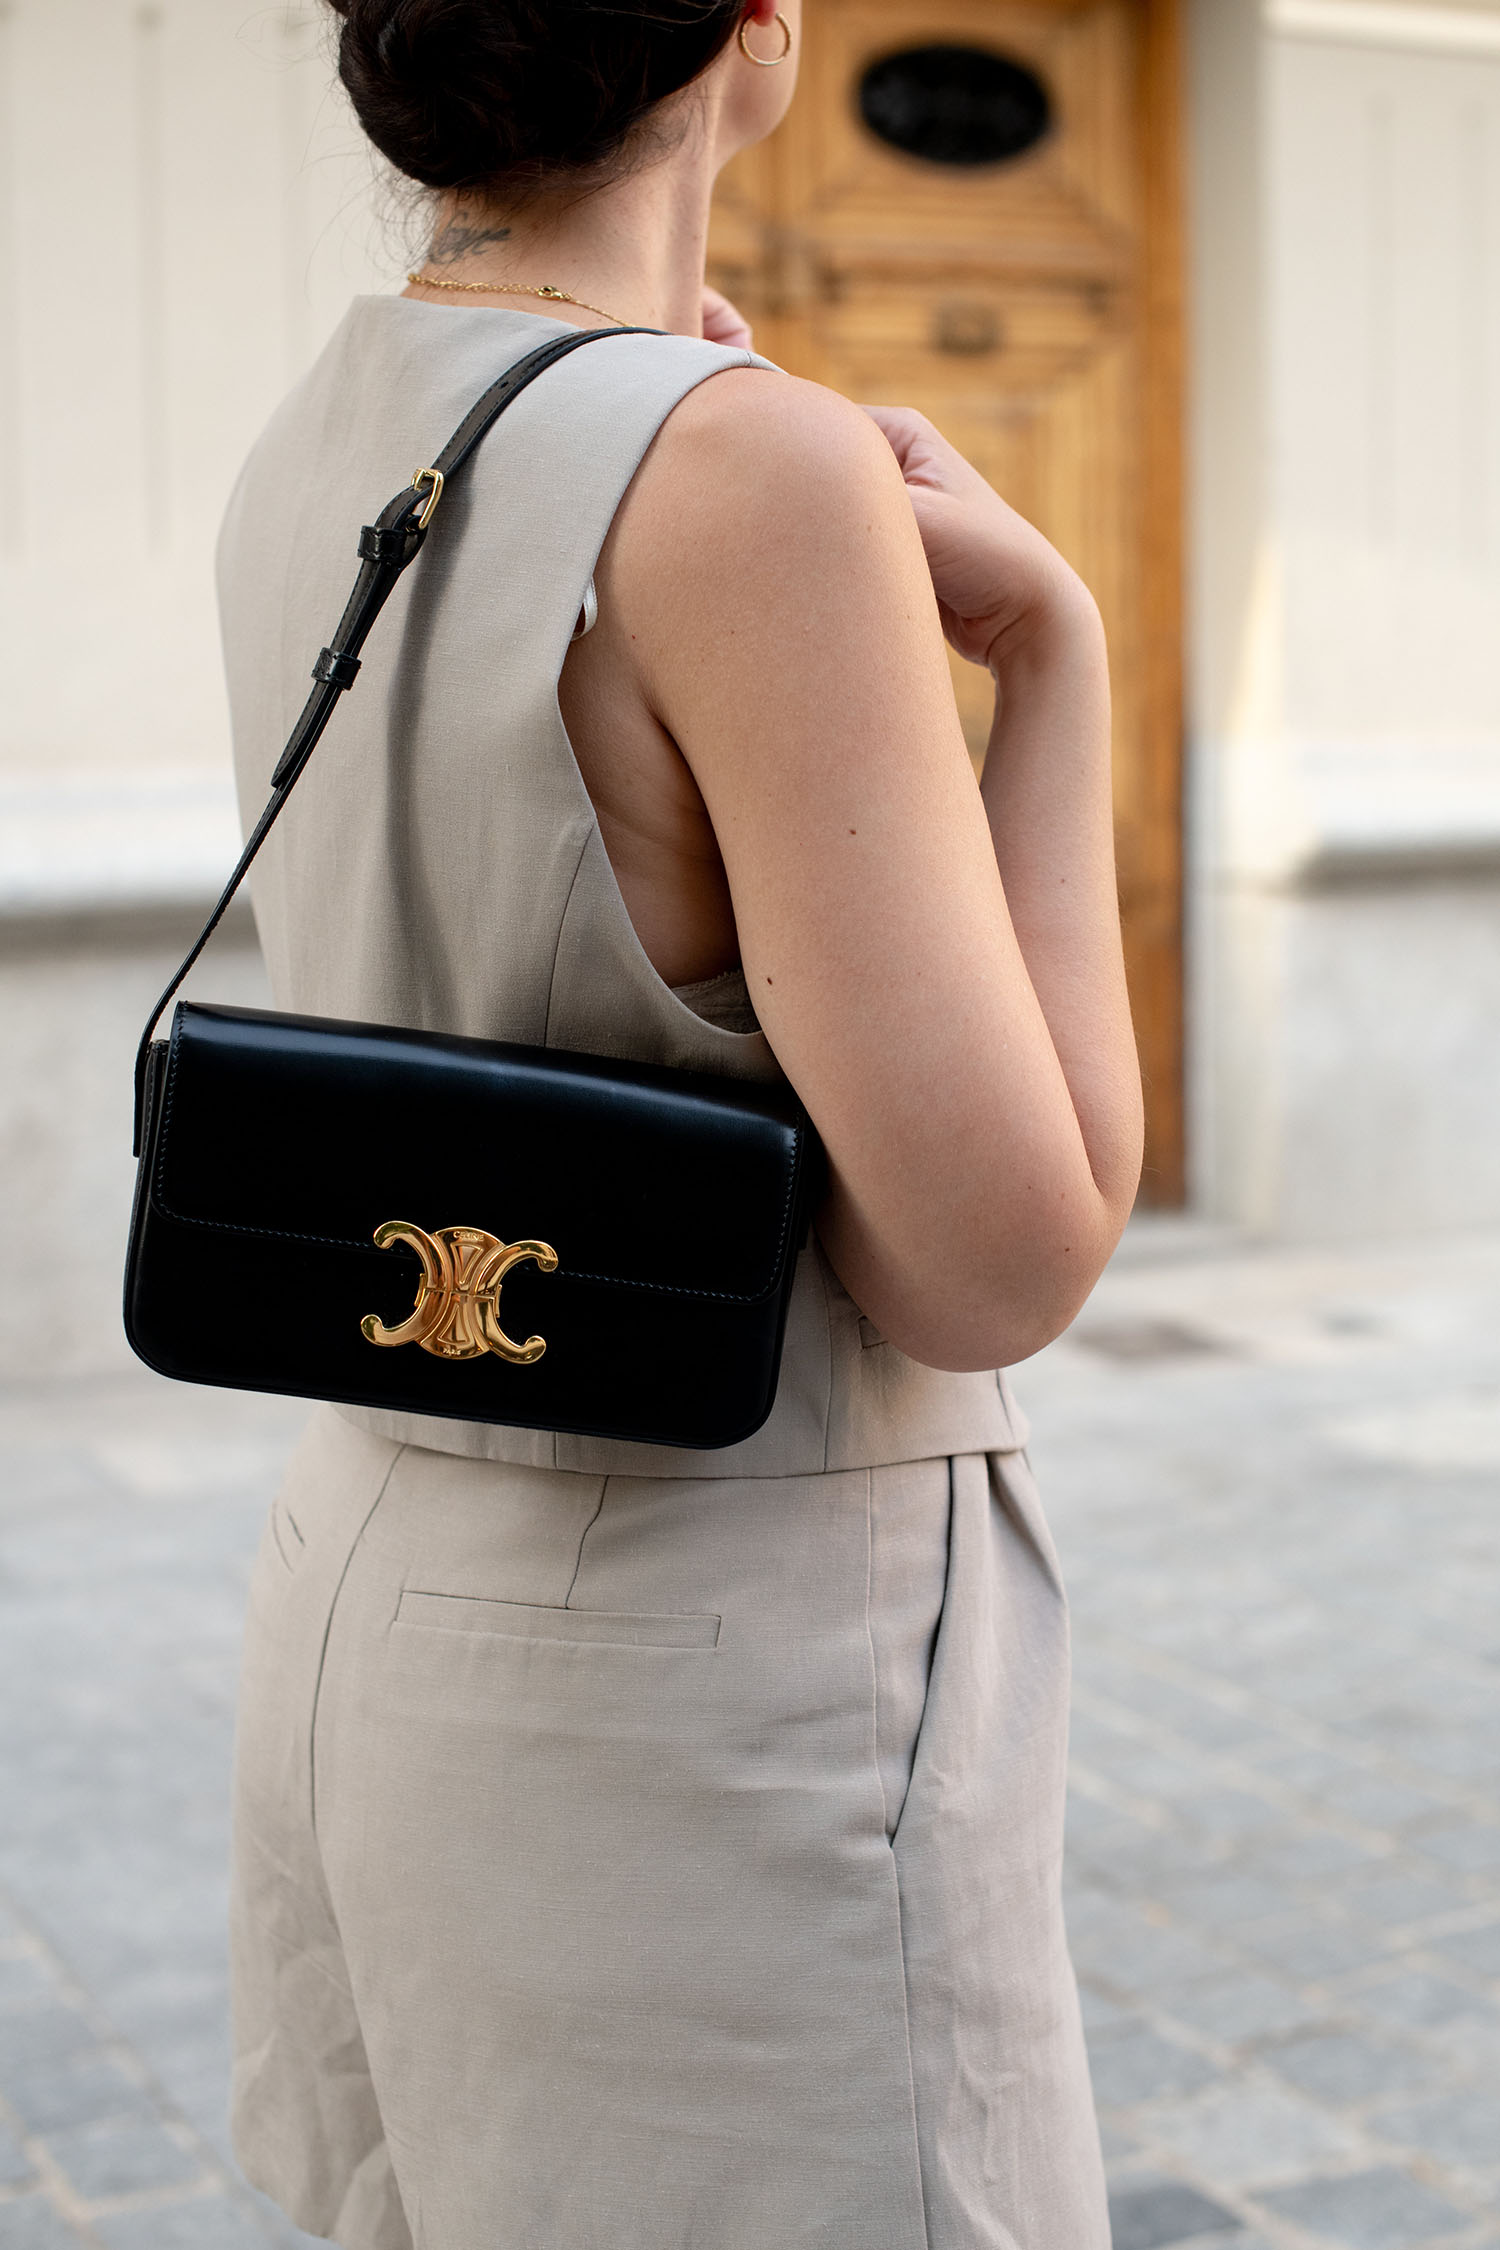 Coco & Voltaire - Celine Triomphe handbag, Zara shorts, Agape Studio necklace